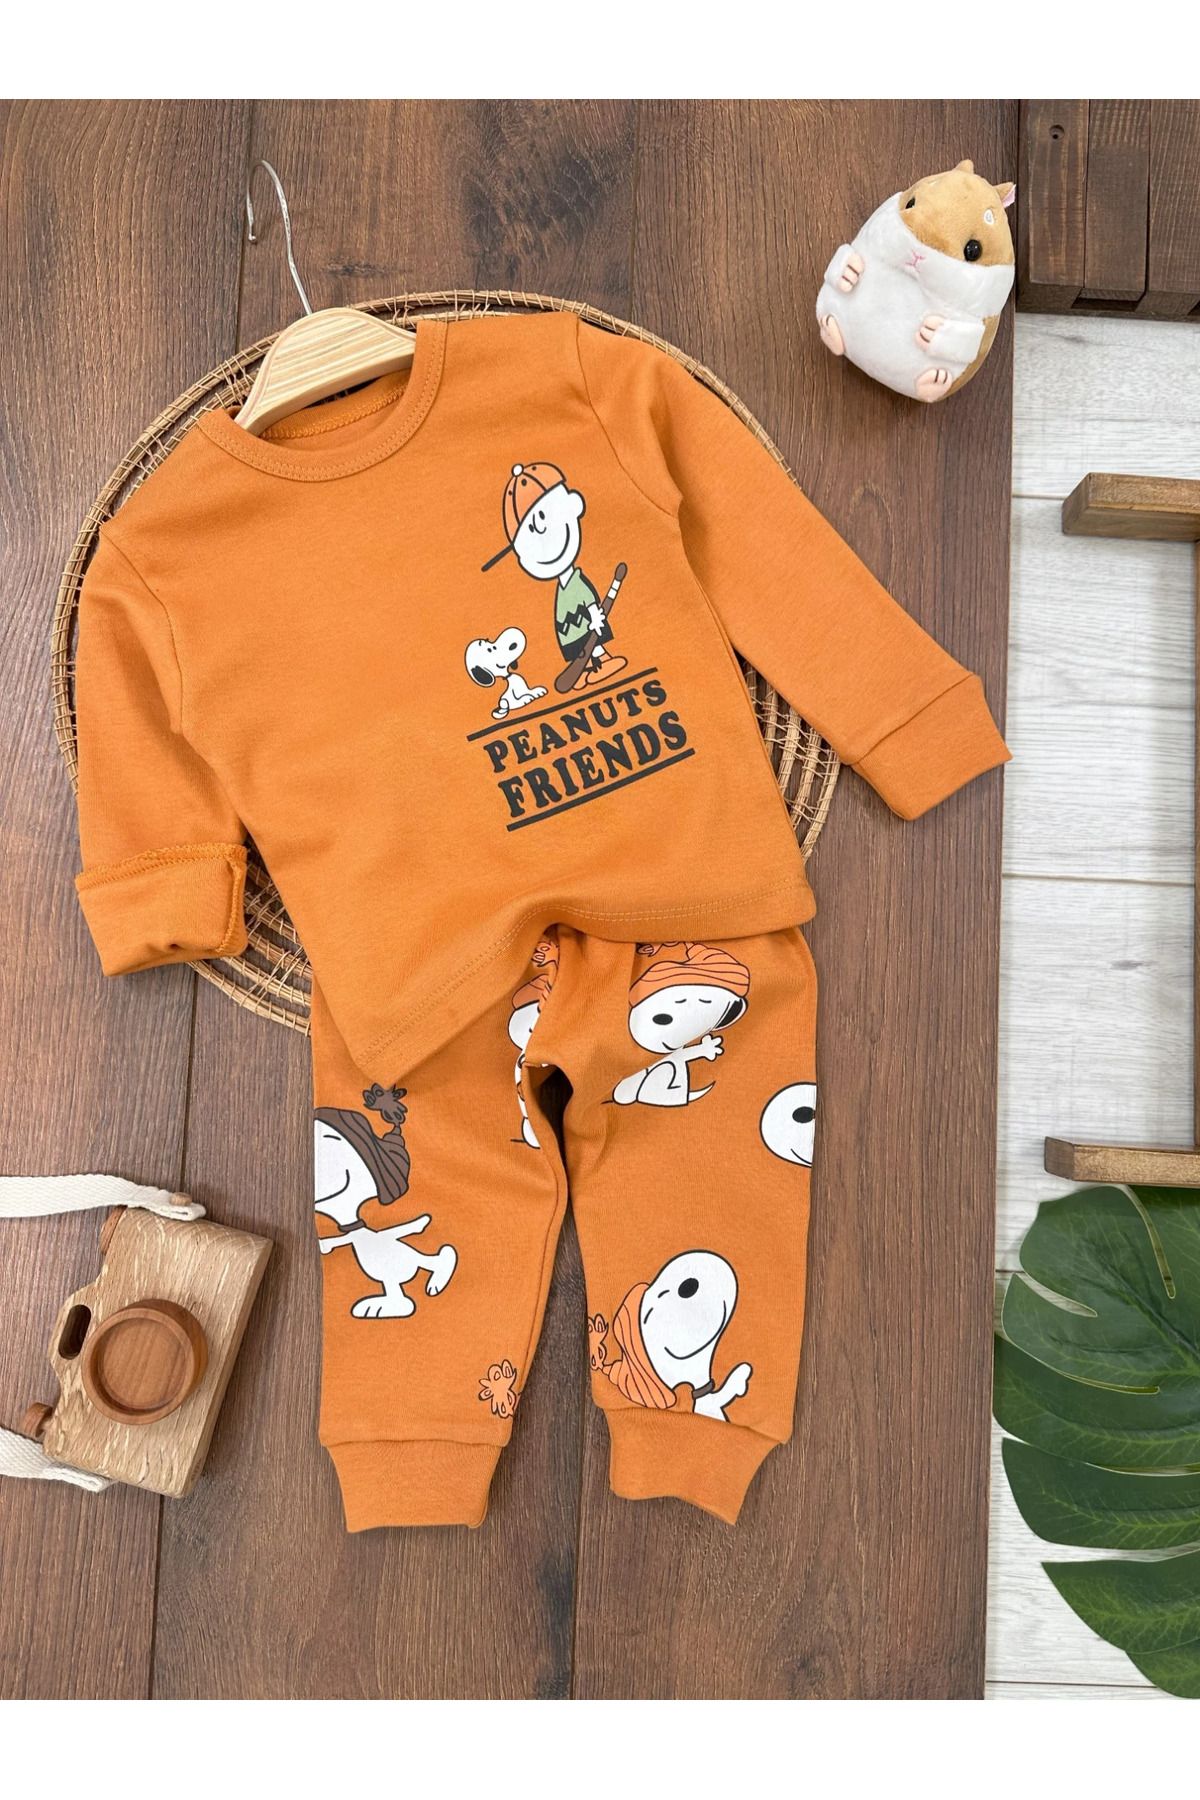 Bolly Baby Erkek Bebek Pijama Takımı Sevimli Köpek Desenli %100 Pamuk Yumuşak Doku Mevsimlik Pijama Takımı